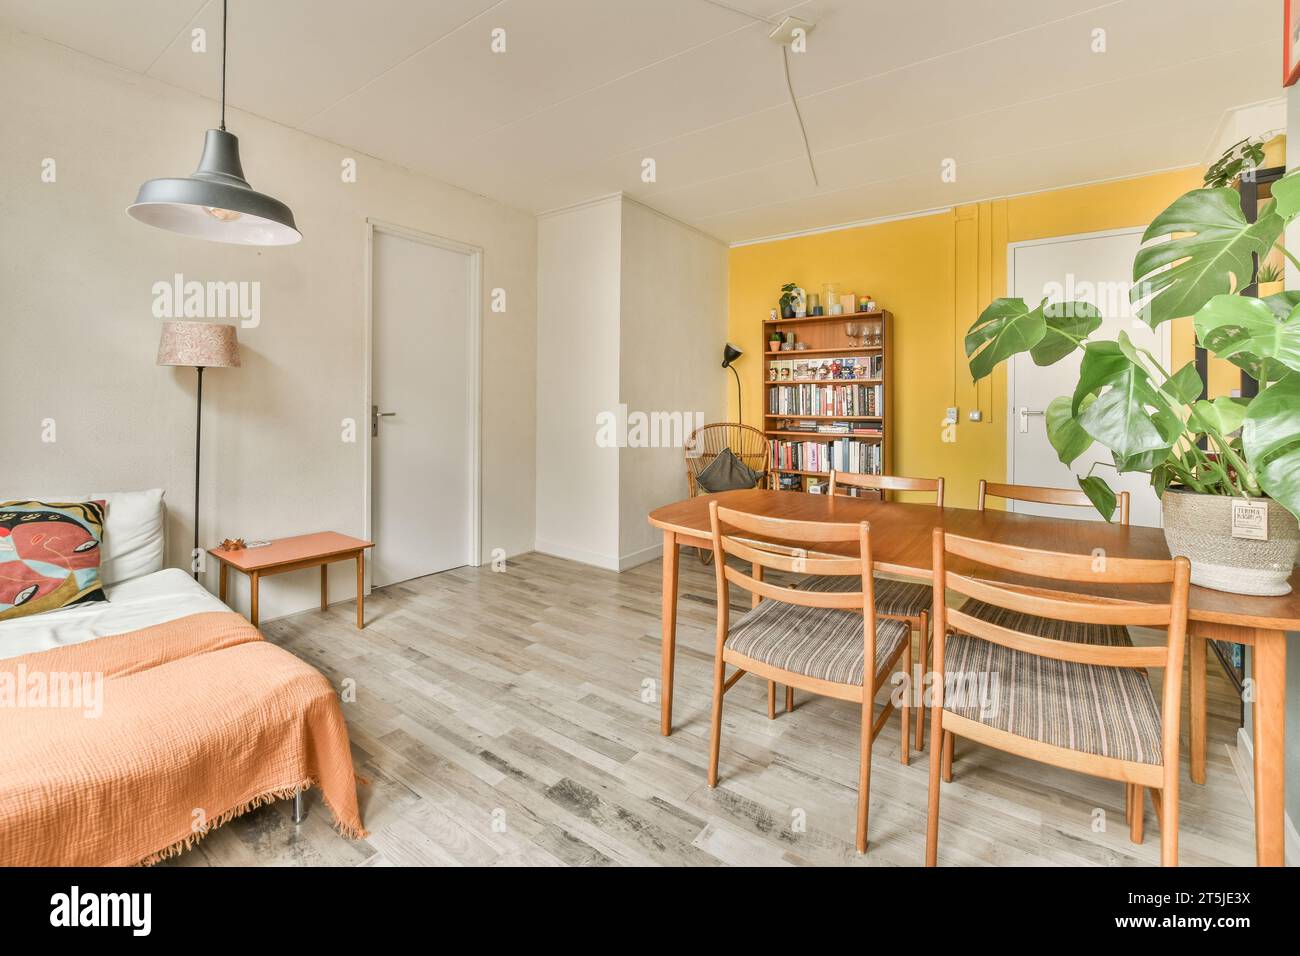 Ein Wohnzimmer mit gelben Wänden und Holzfußboden, darunter ein kleiner Esstisch, der von zwei Holzstühlen umgeben ist Stockfoto